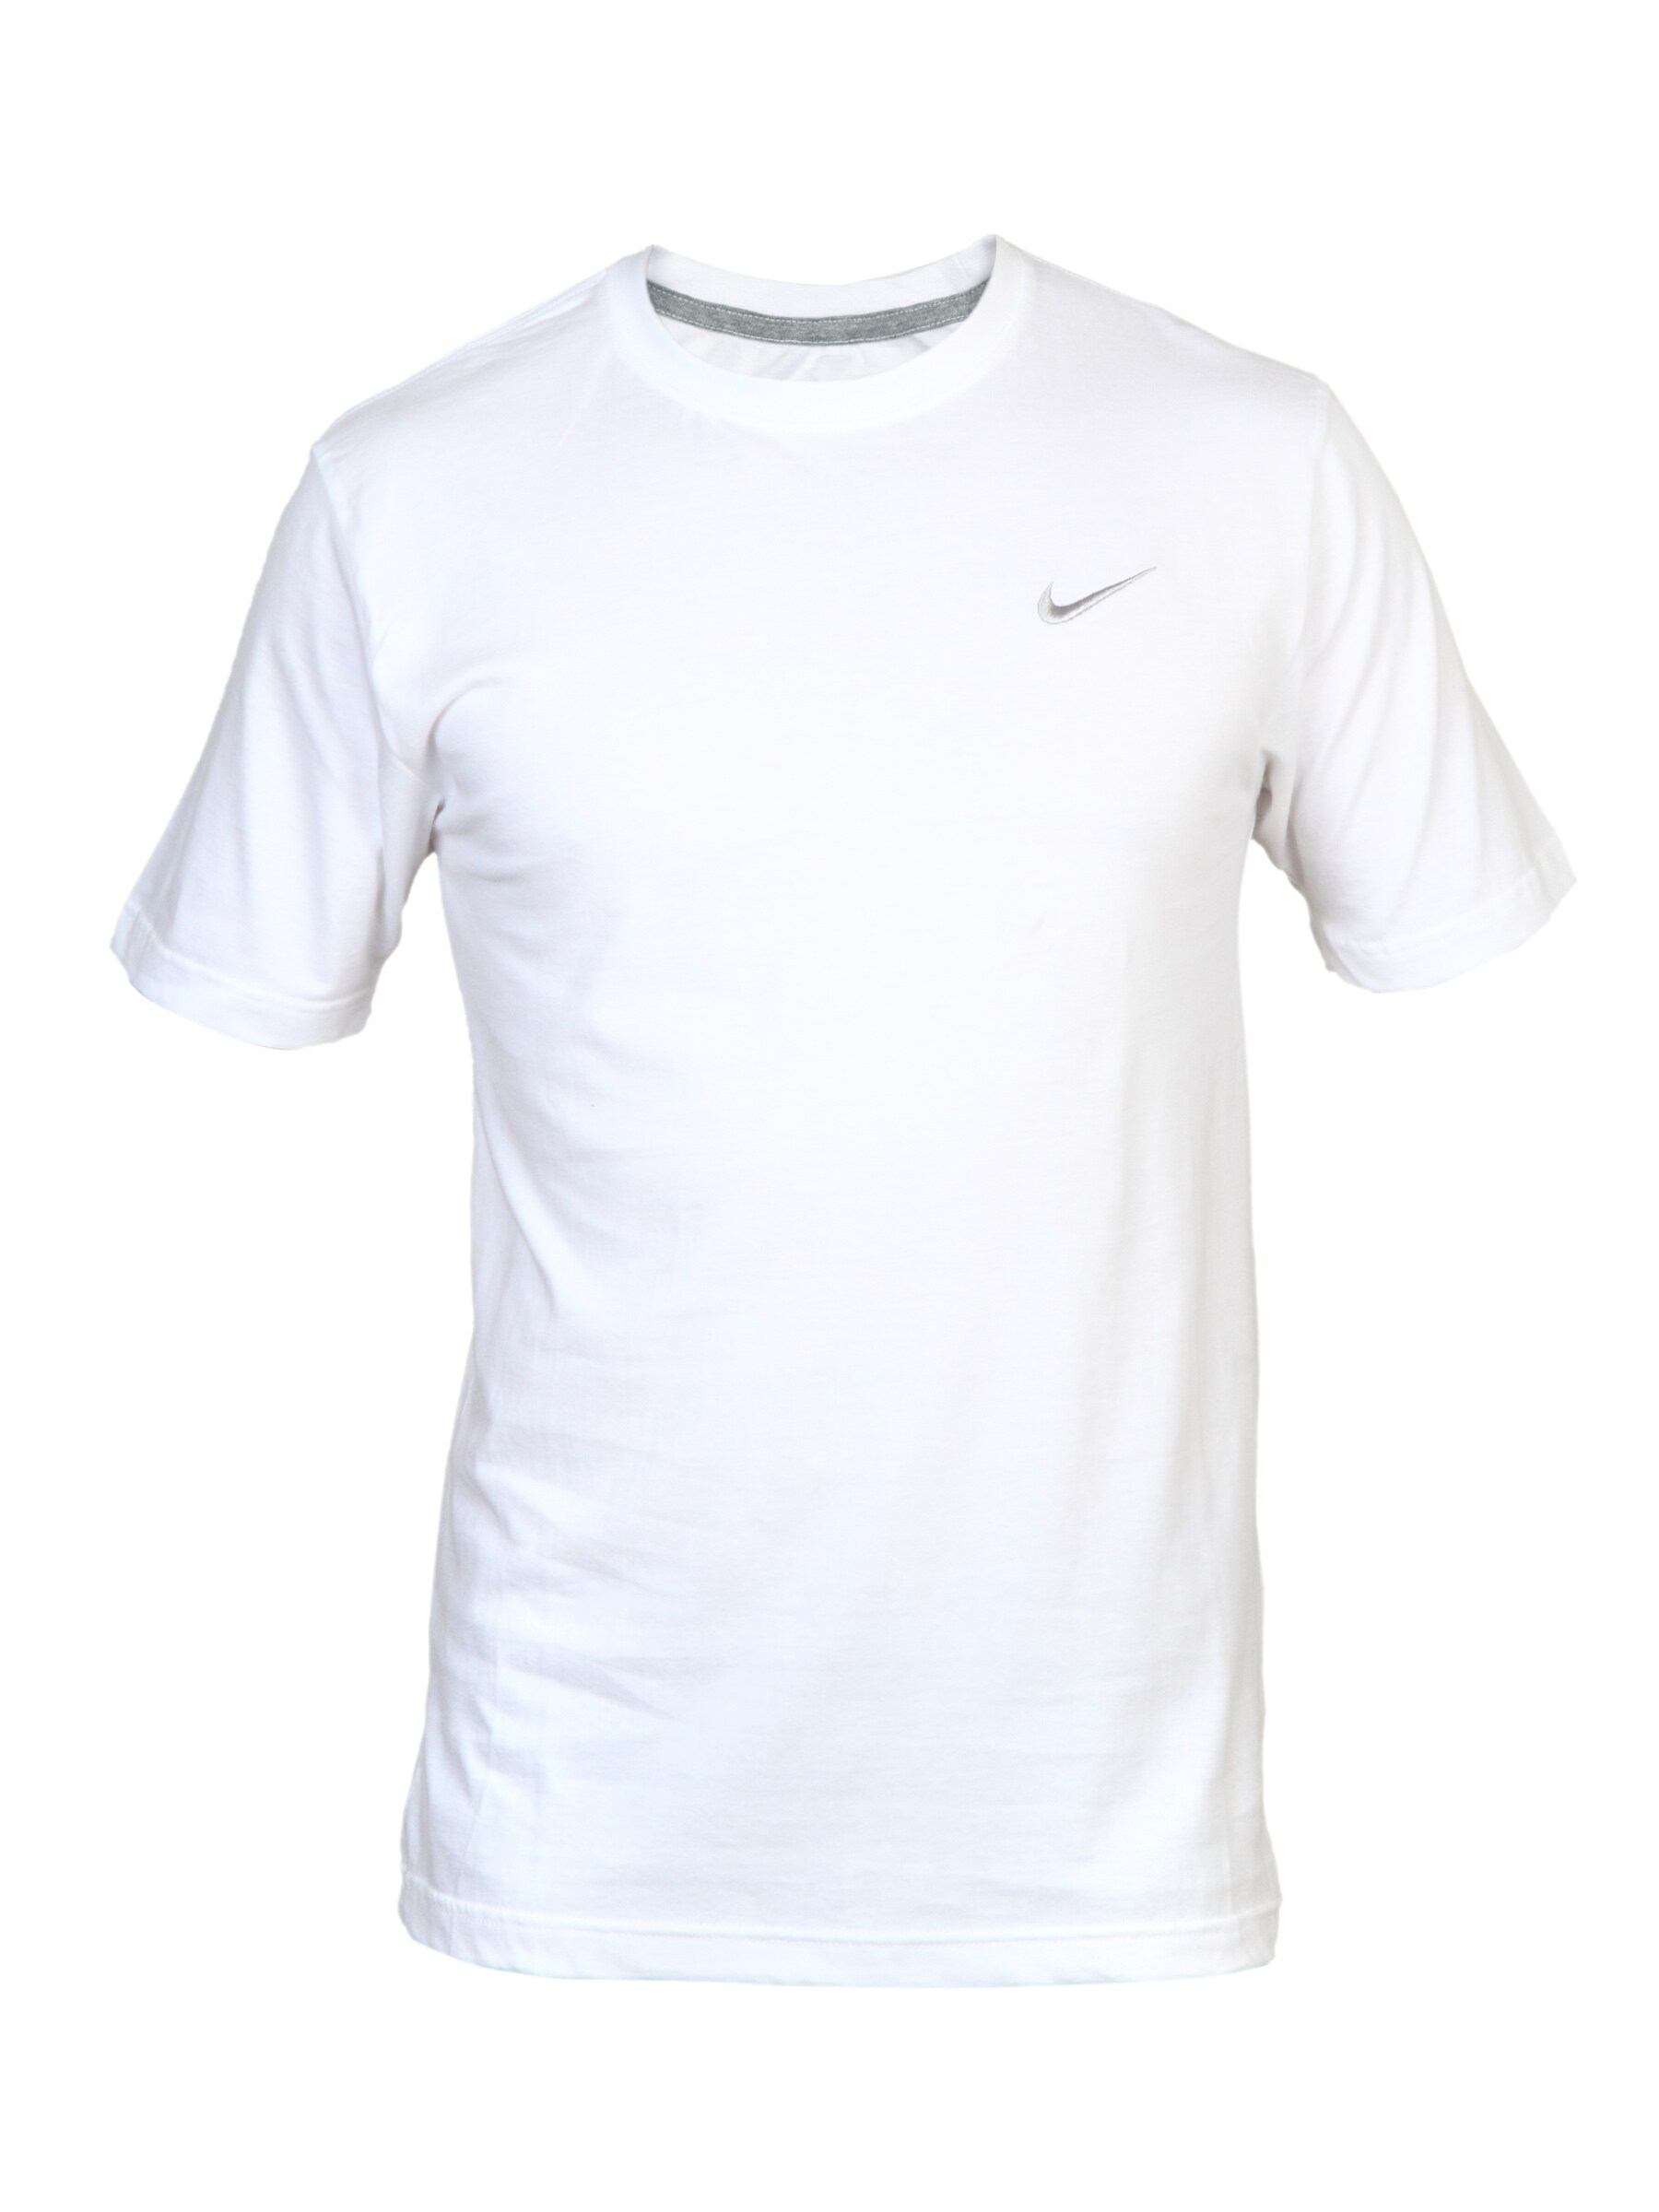 Nike Men's Swoosh White T-shirt